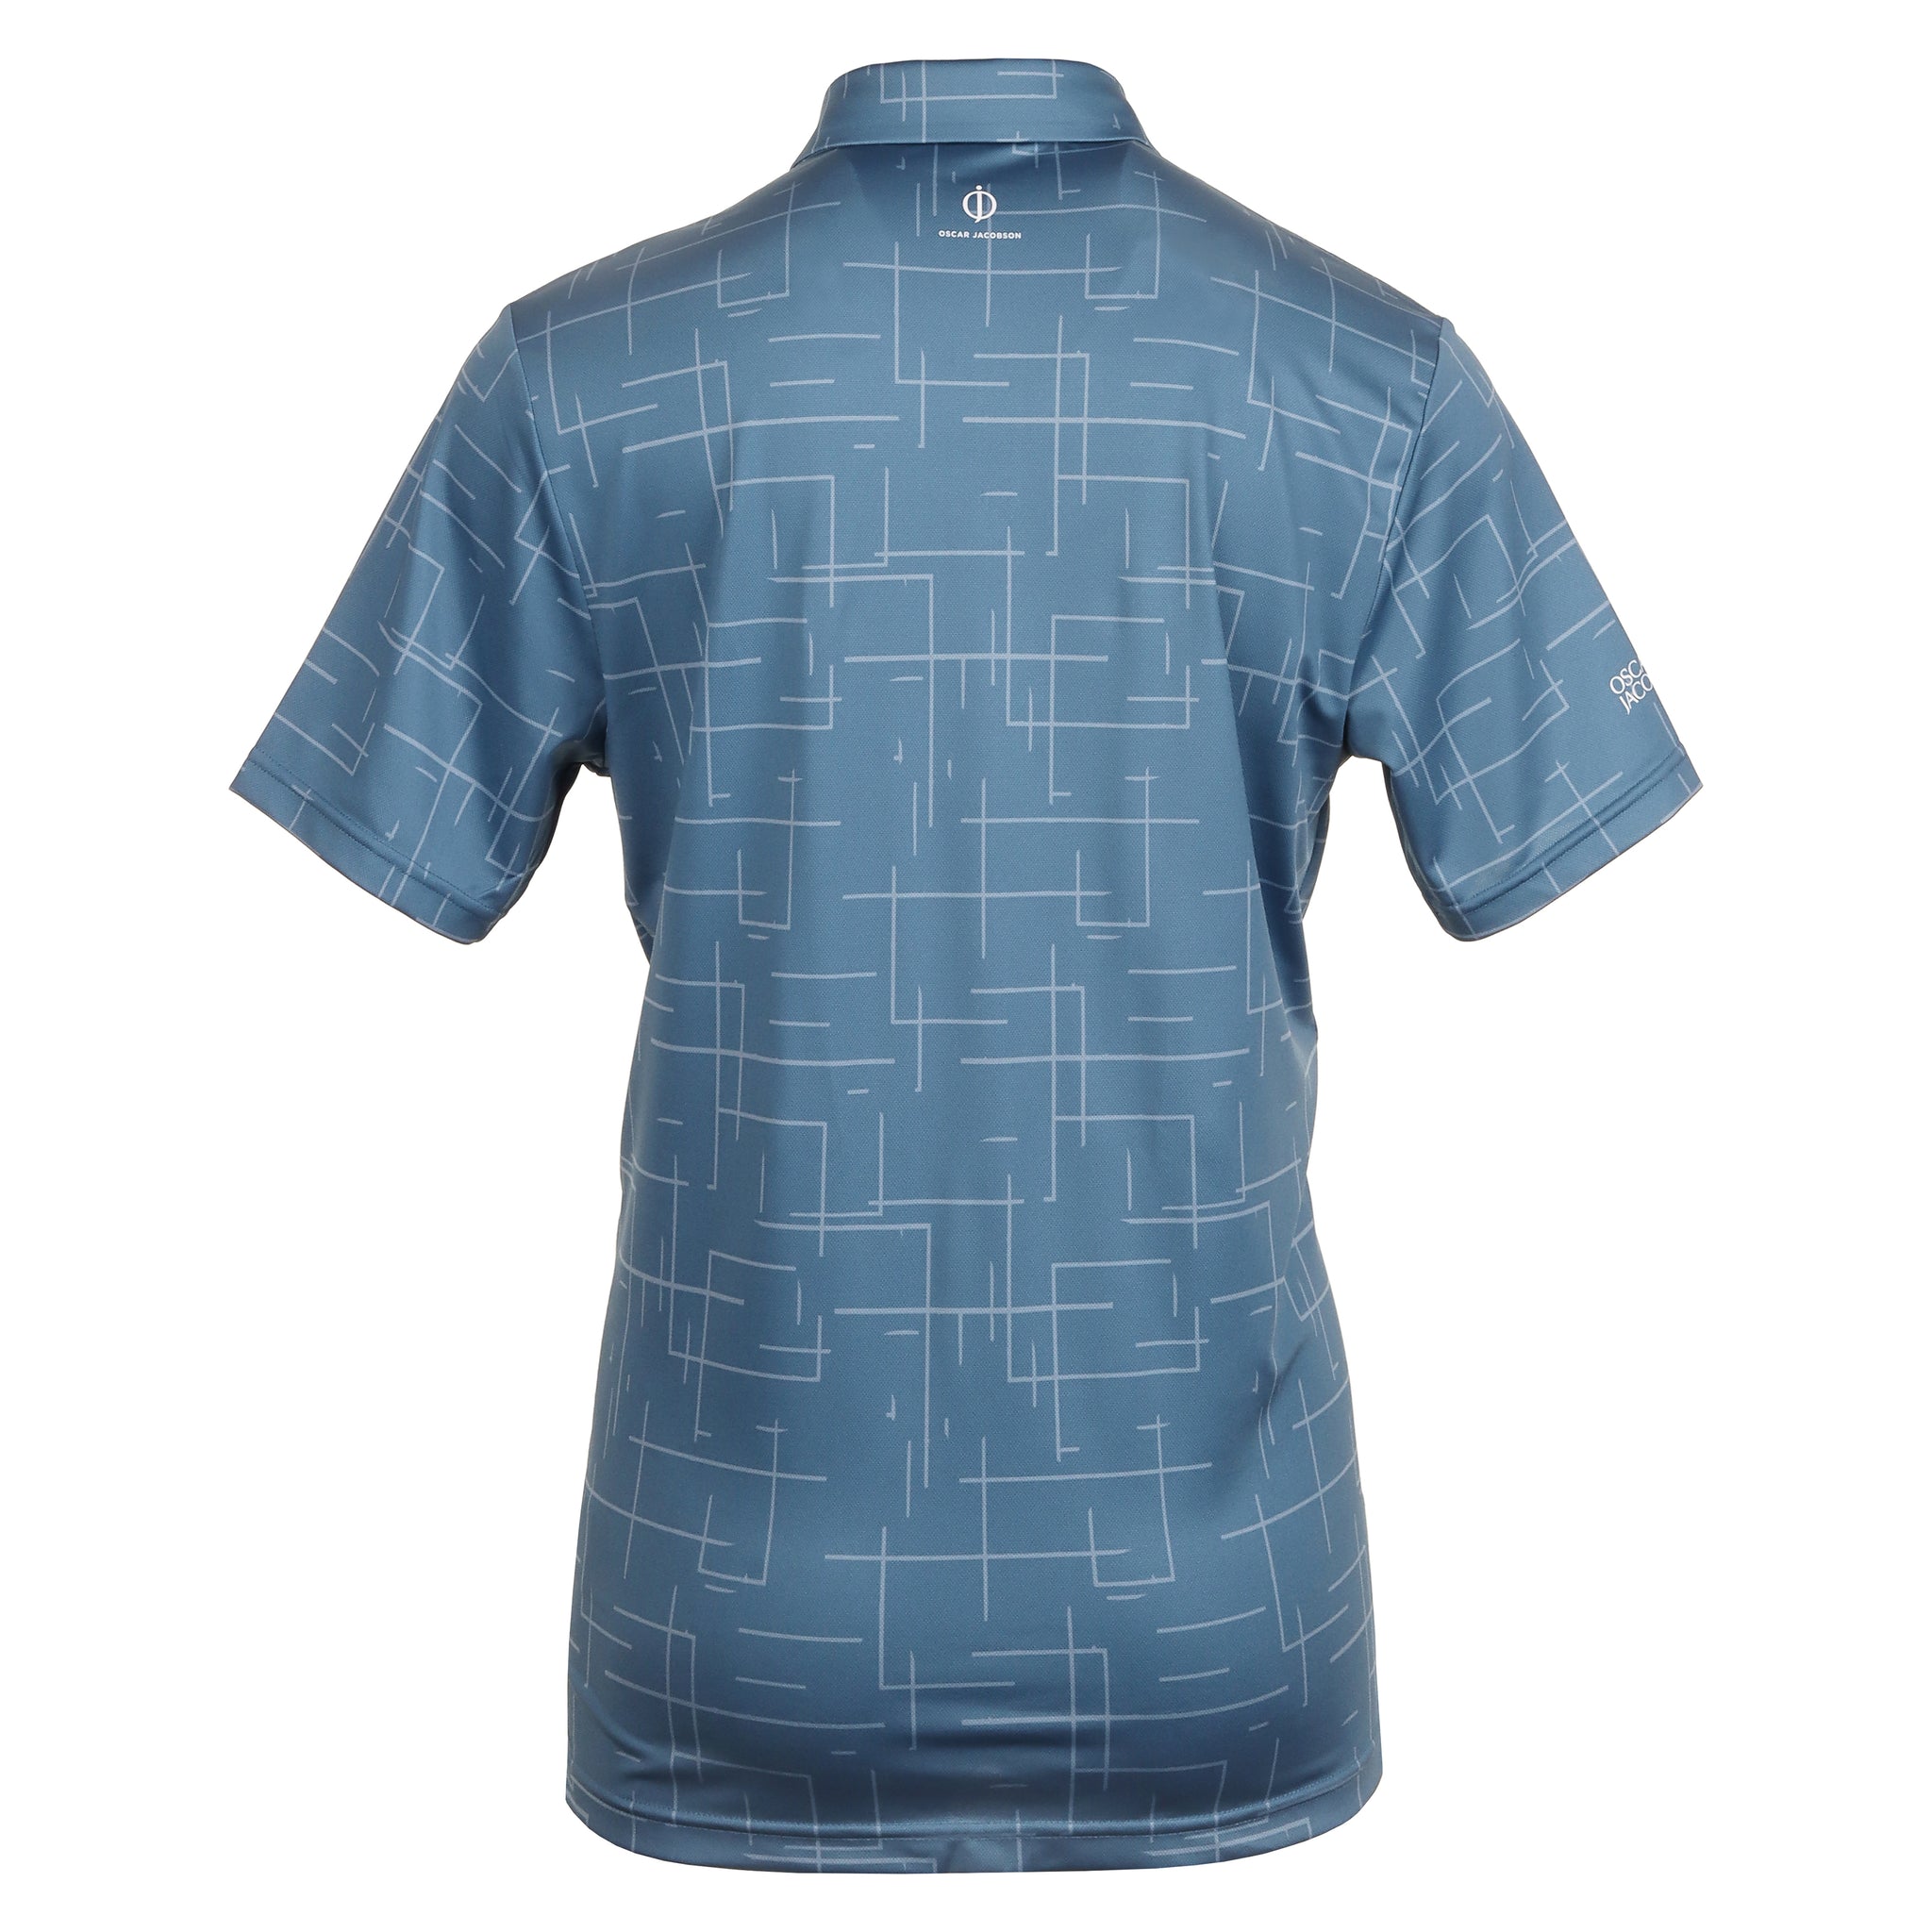 oscar-jacobson-ashald-shirt-ojts0178-elemental